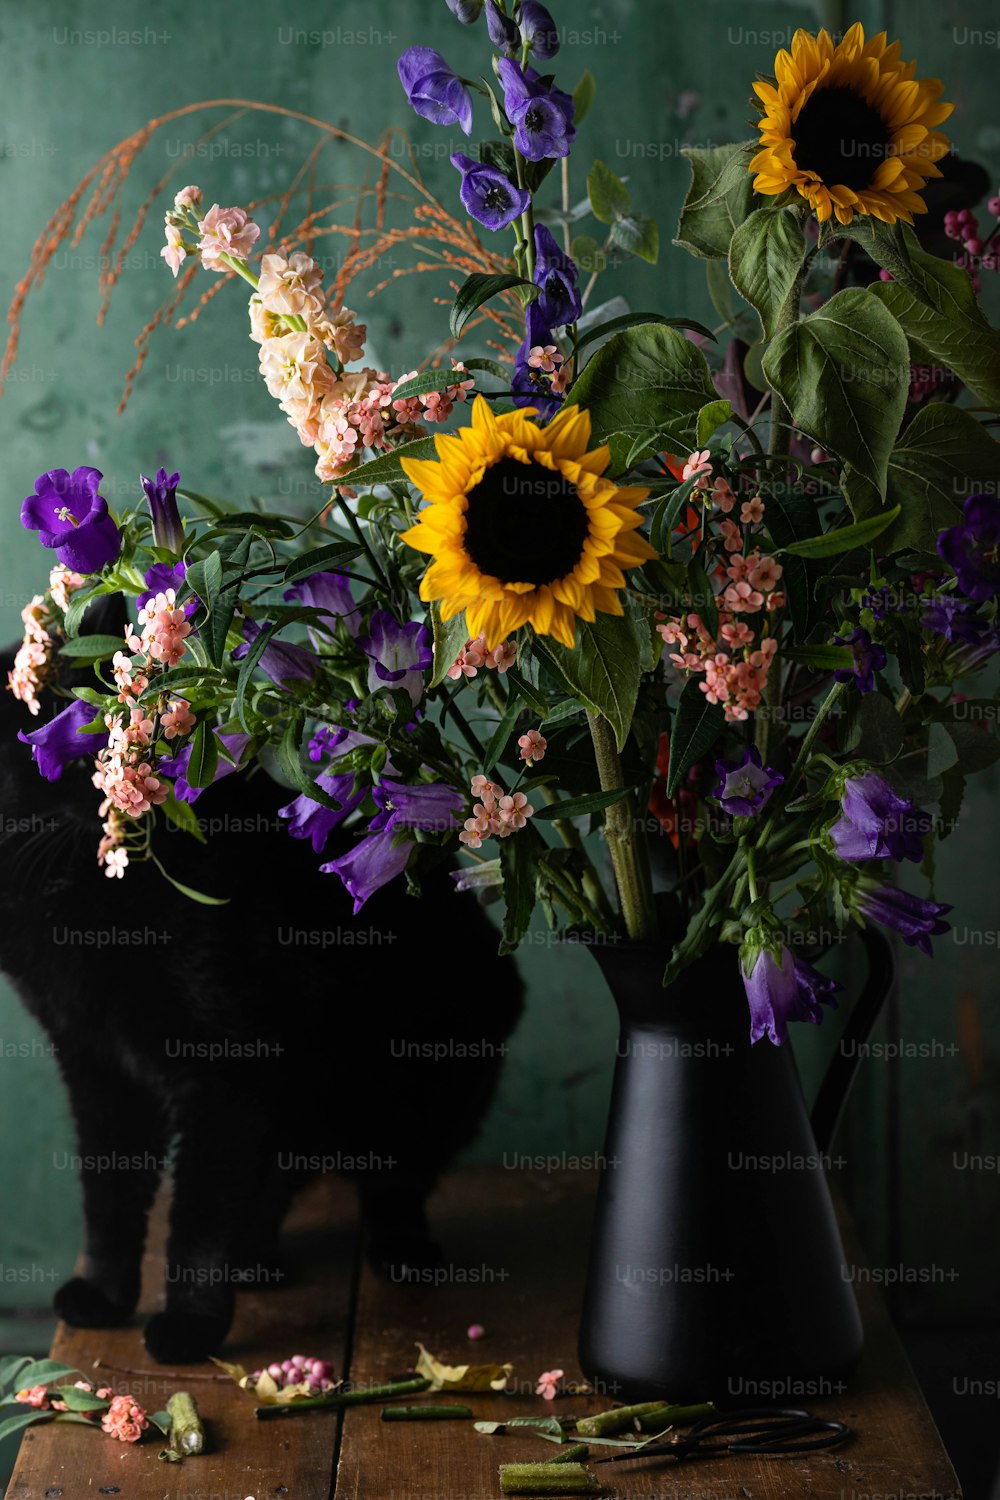 Un gato negro parado junto a un jarrón de flores